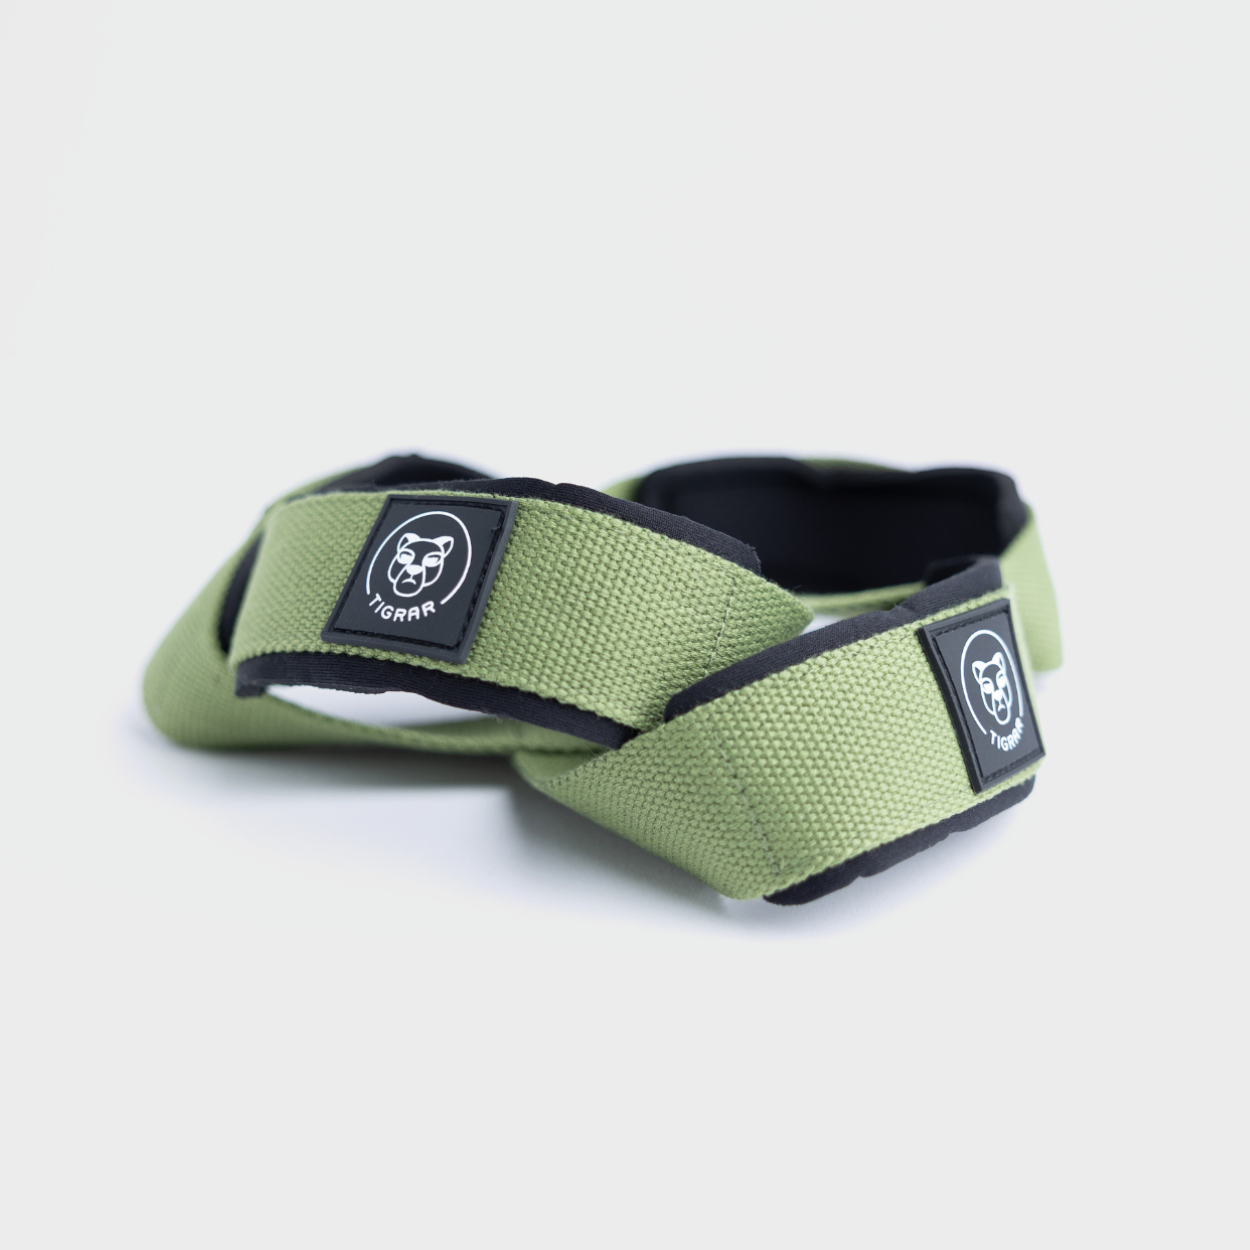 Groene Tigrar Figure 8 straps, gemaakt voor duurzaamheid en comfort, tegen een grijze achtergrond.